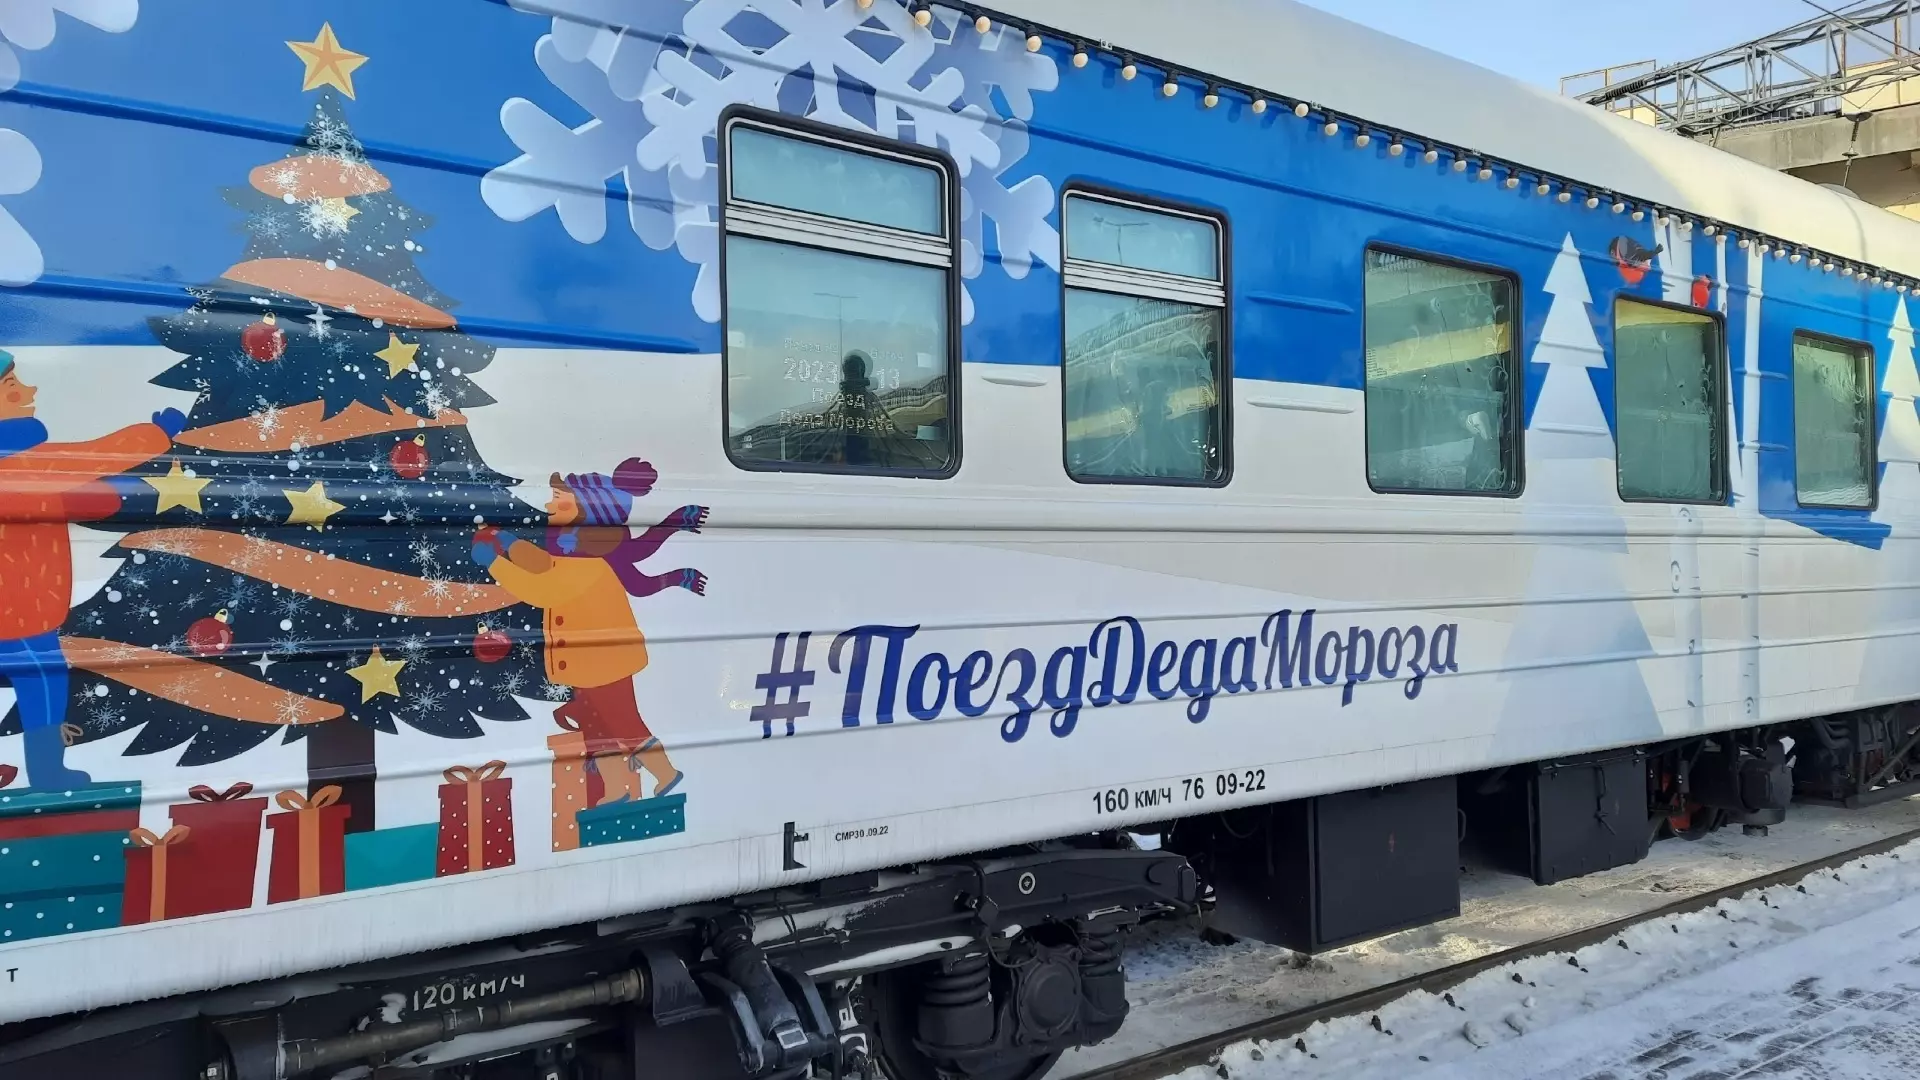 Автобусы изменят движение в Нижнем Новгороде из-за поезда Деда Мороза